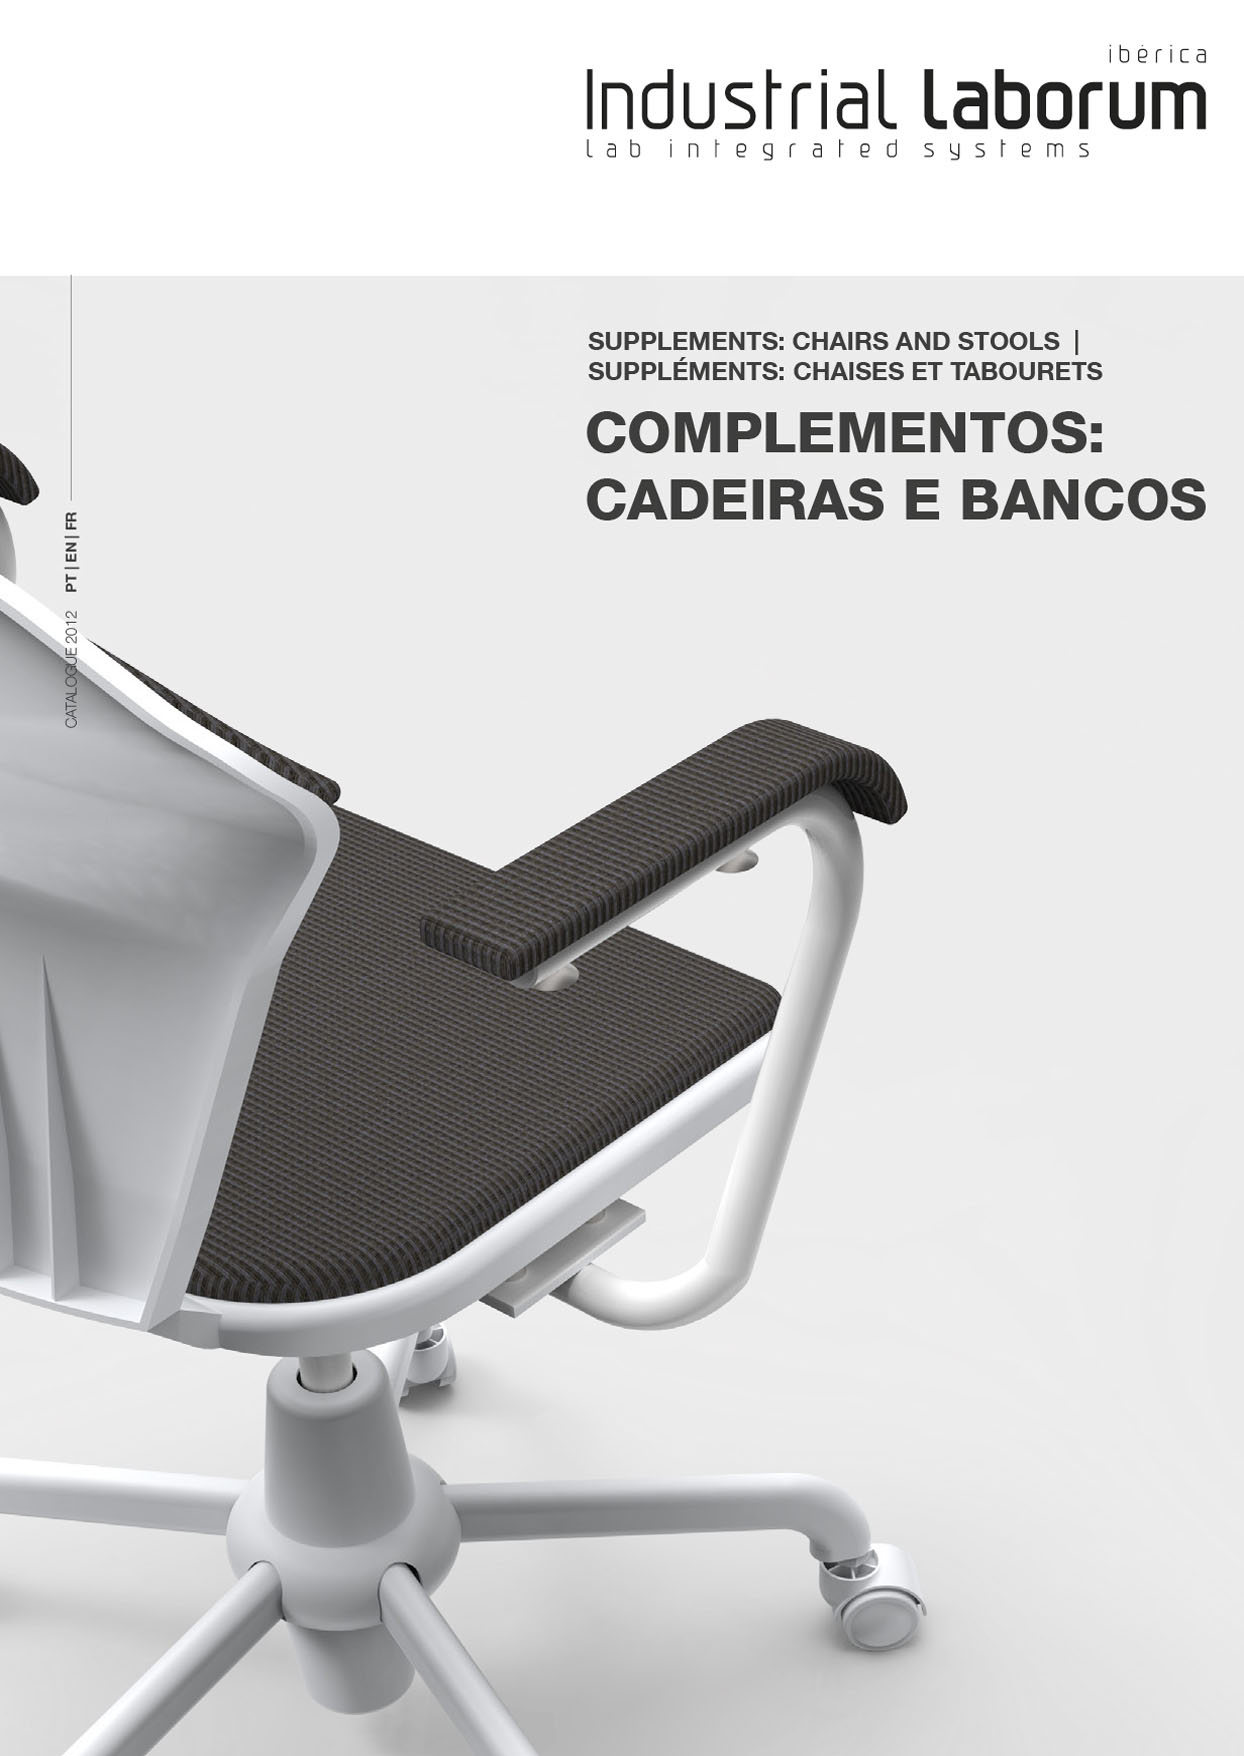 Catálogo Cadeiras e Bancos Industrial Laborum Ibérica